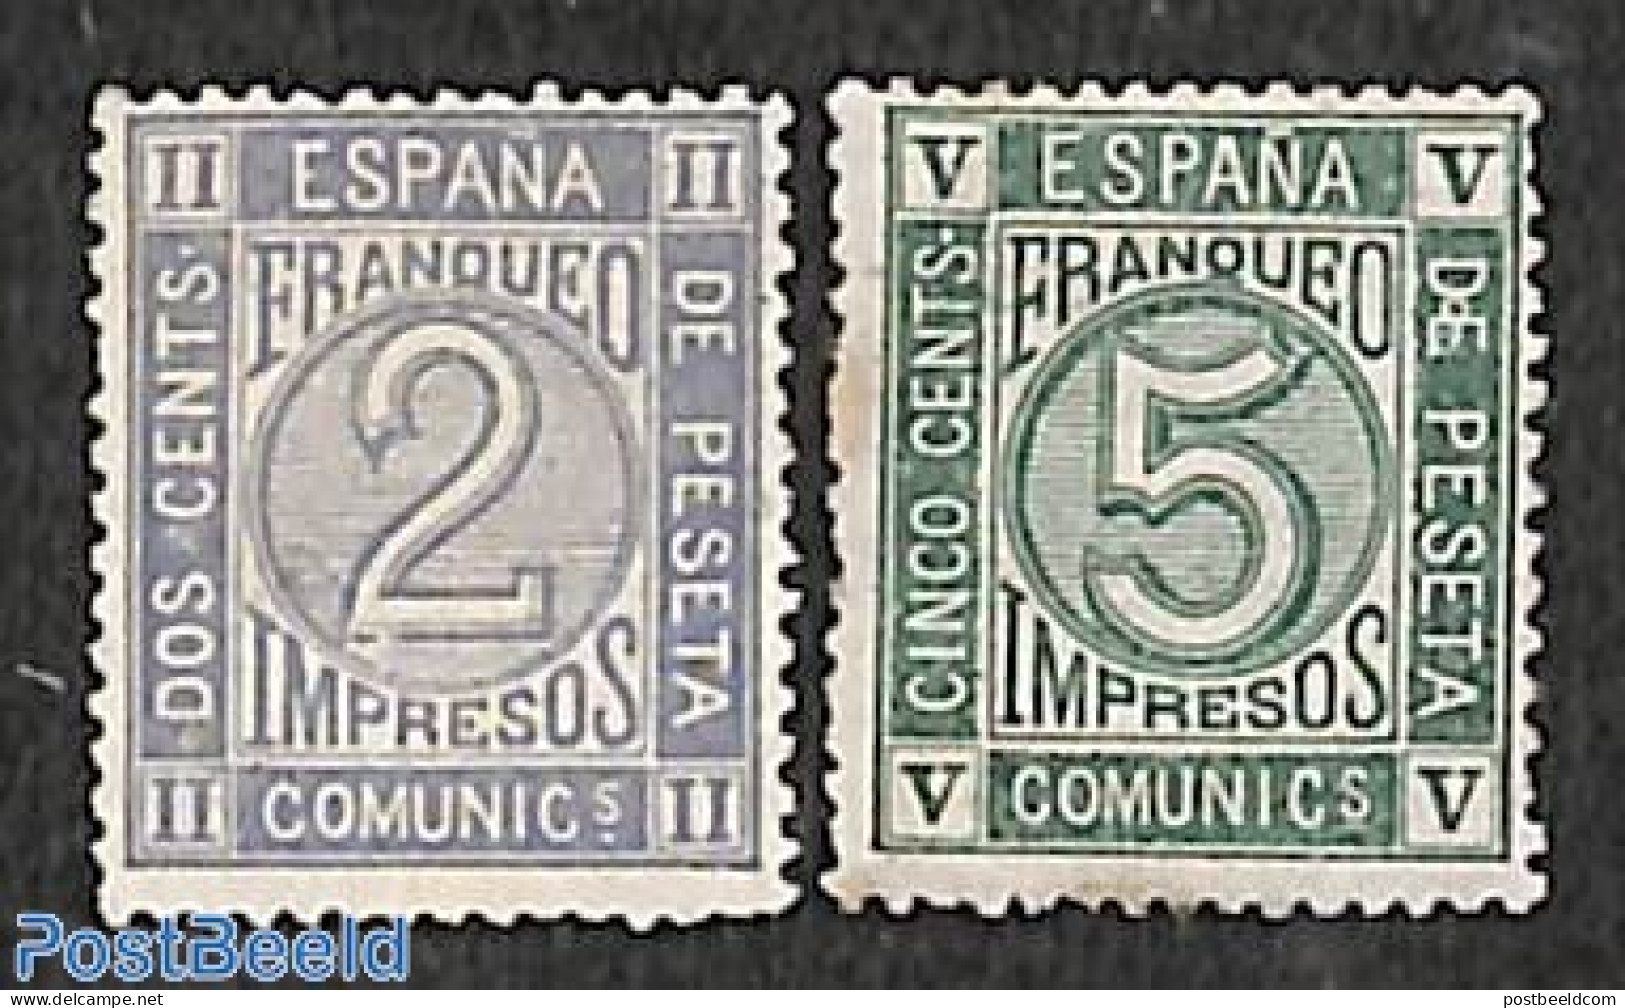 Spain 1872 Newspaper Stamps 2v, Unused (hinged), History - Newspapers & Journalism - Neufs